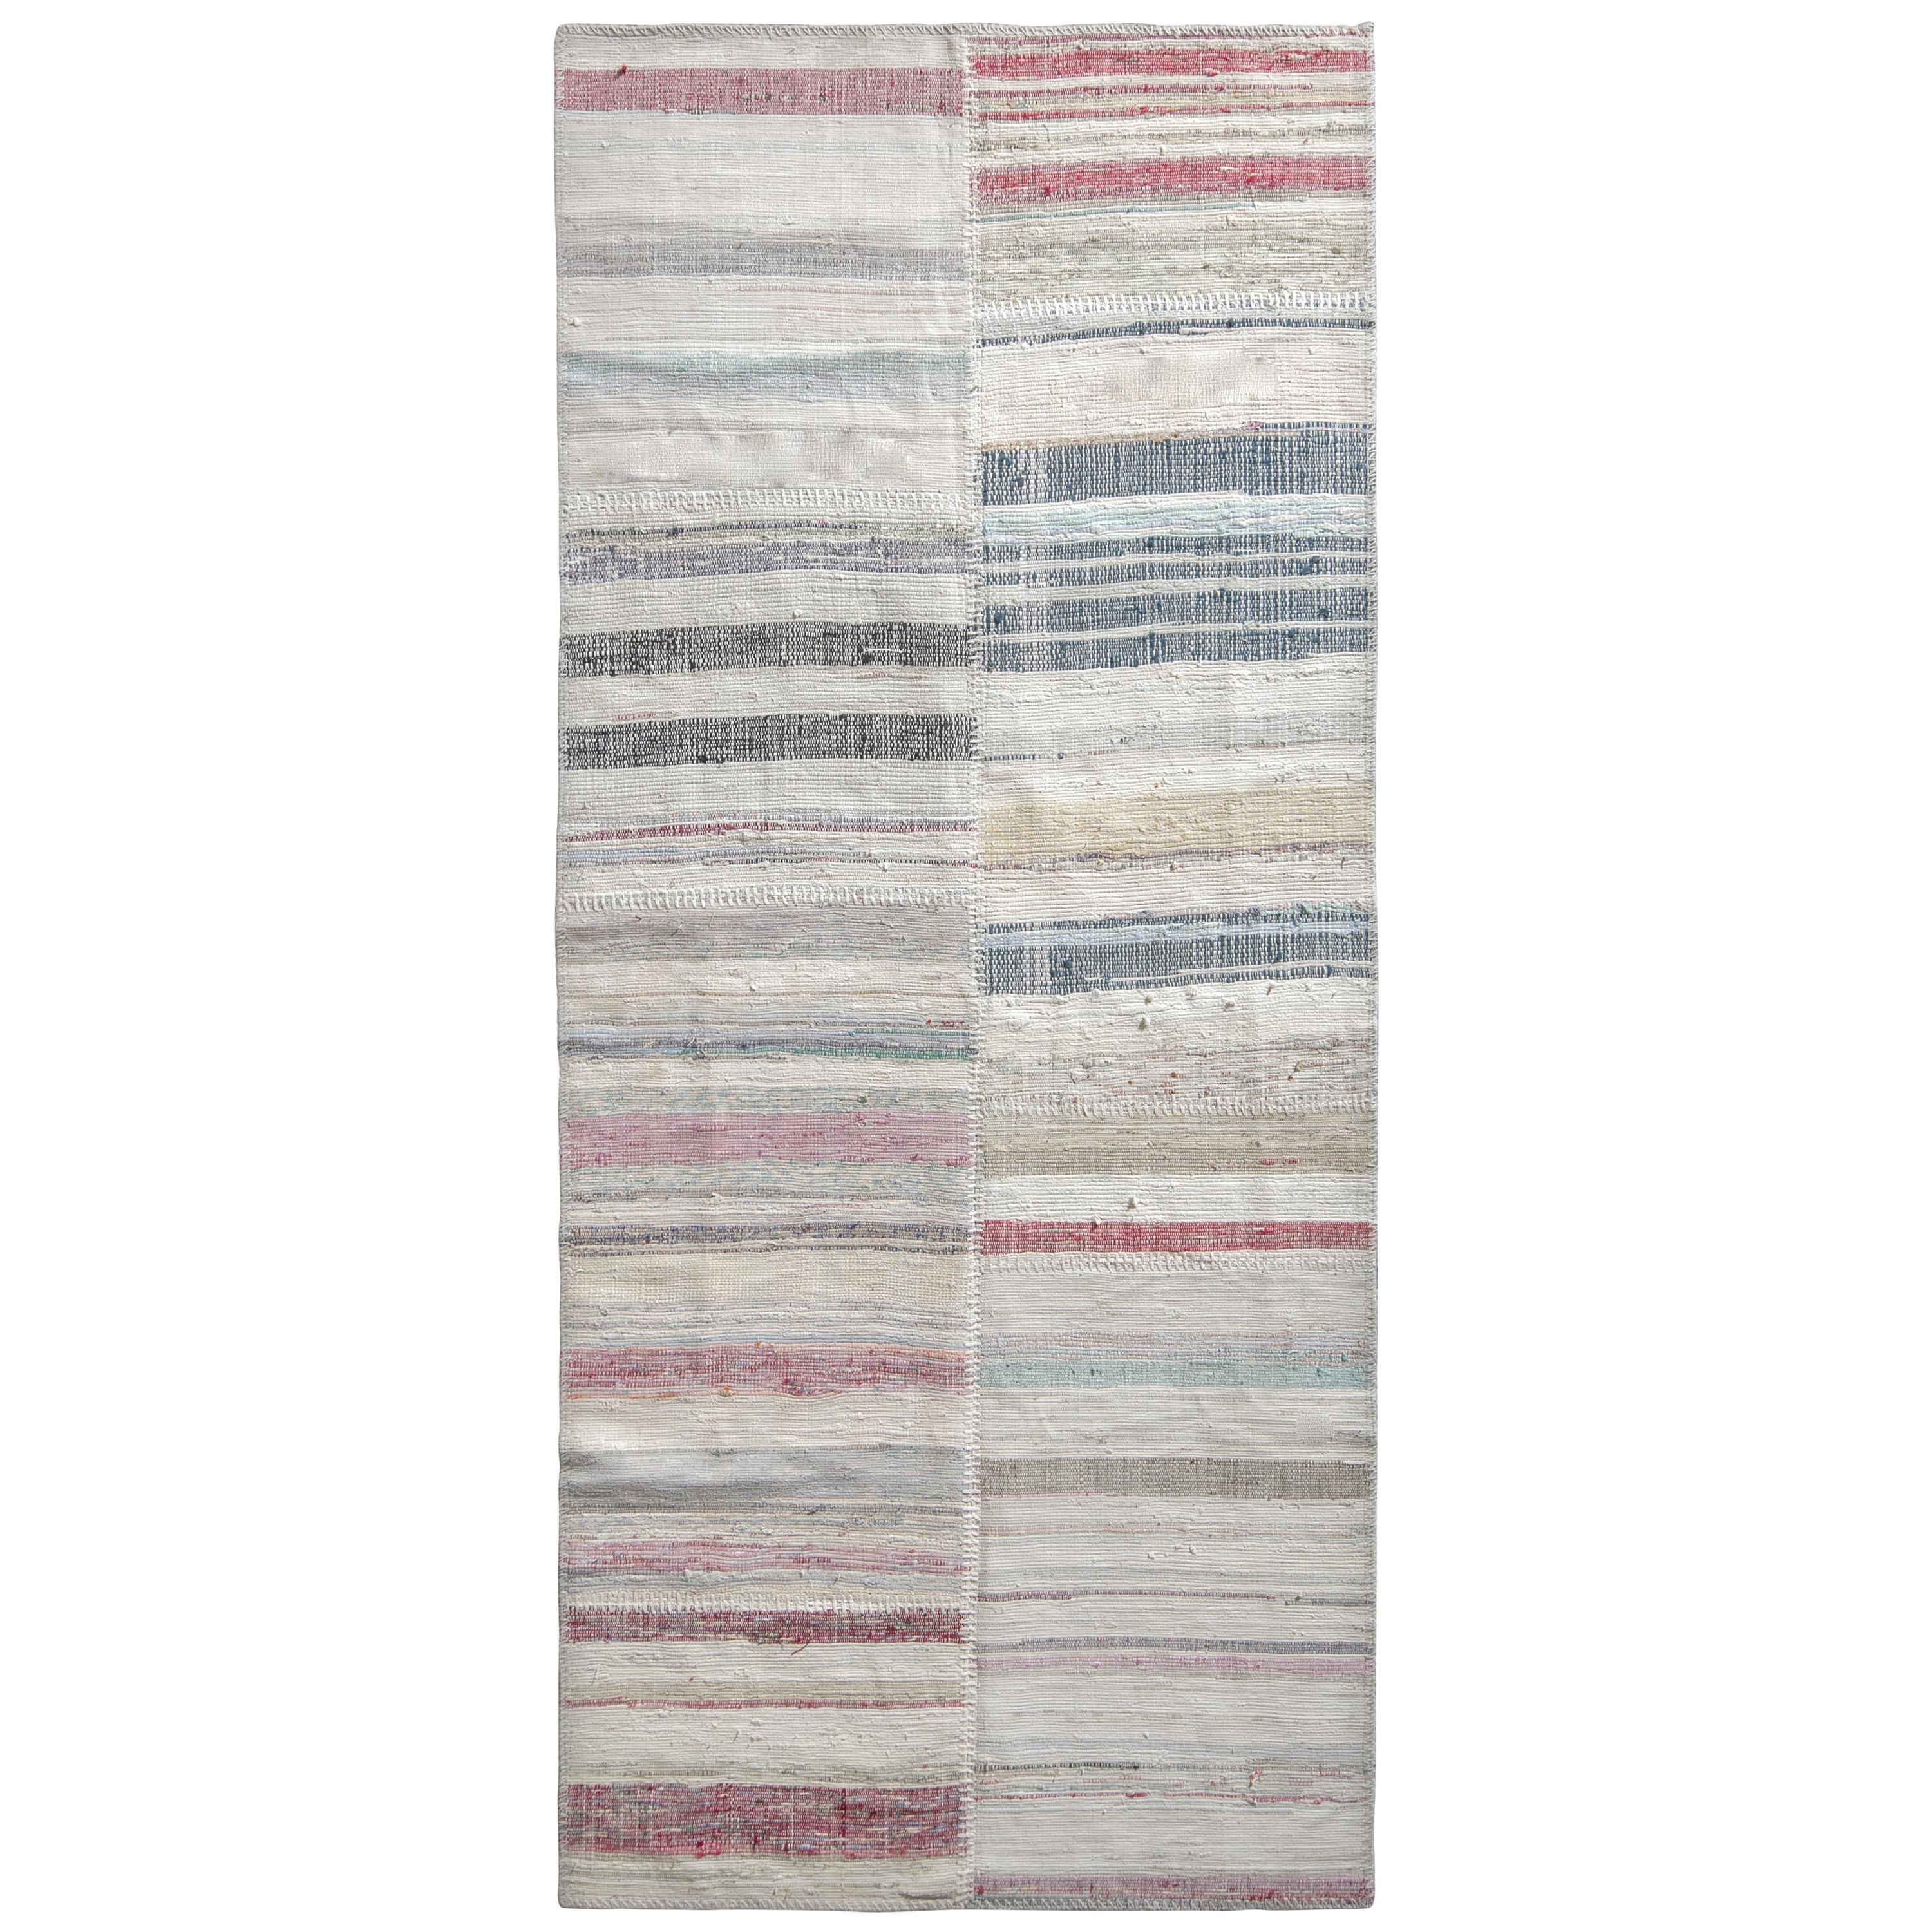 Rug & Kilim's Modern Patchwork Kilim Runner in Gray Multi-Color Stripe Pattern